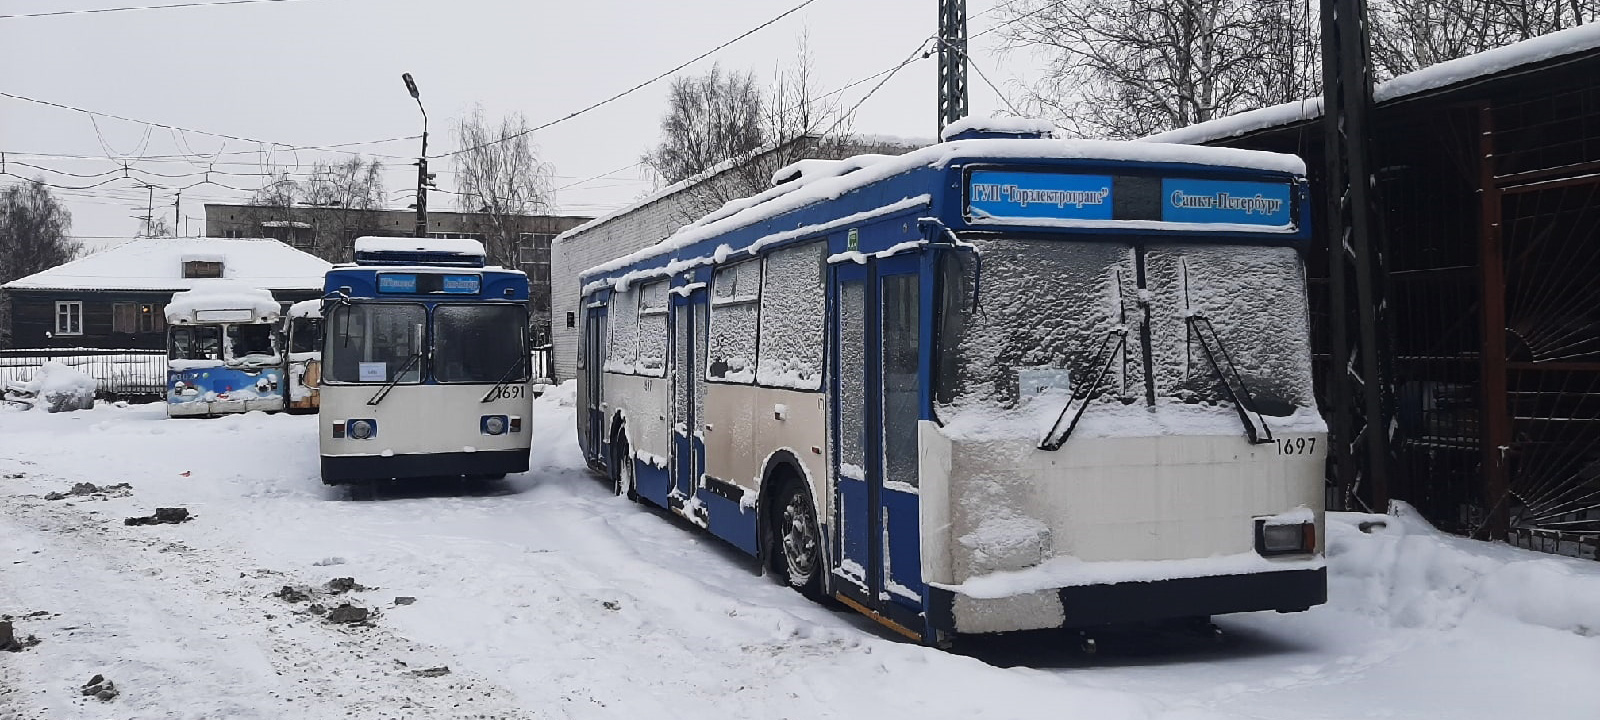 Подаренные Санкт-Петербургом троллейбусы, как заснеженные сараи, стоят в Петрозаводске (ФОТО)